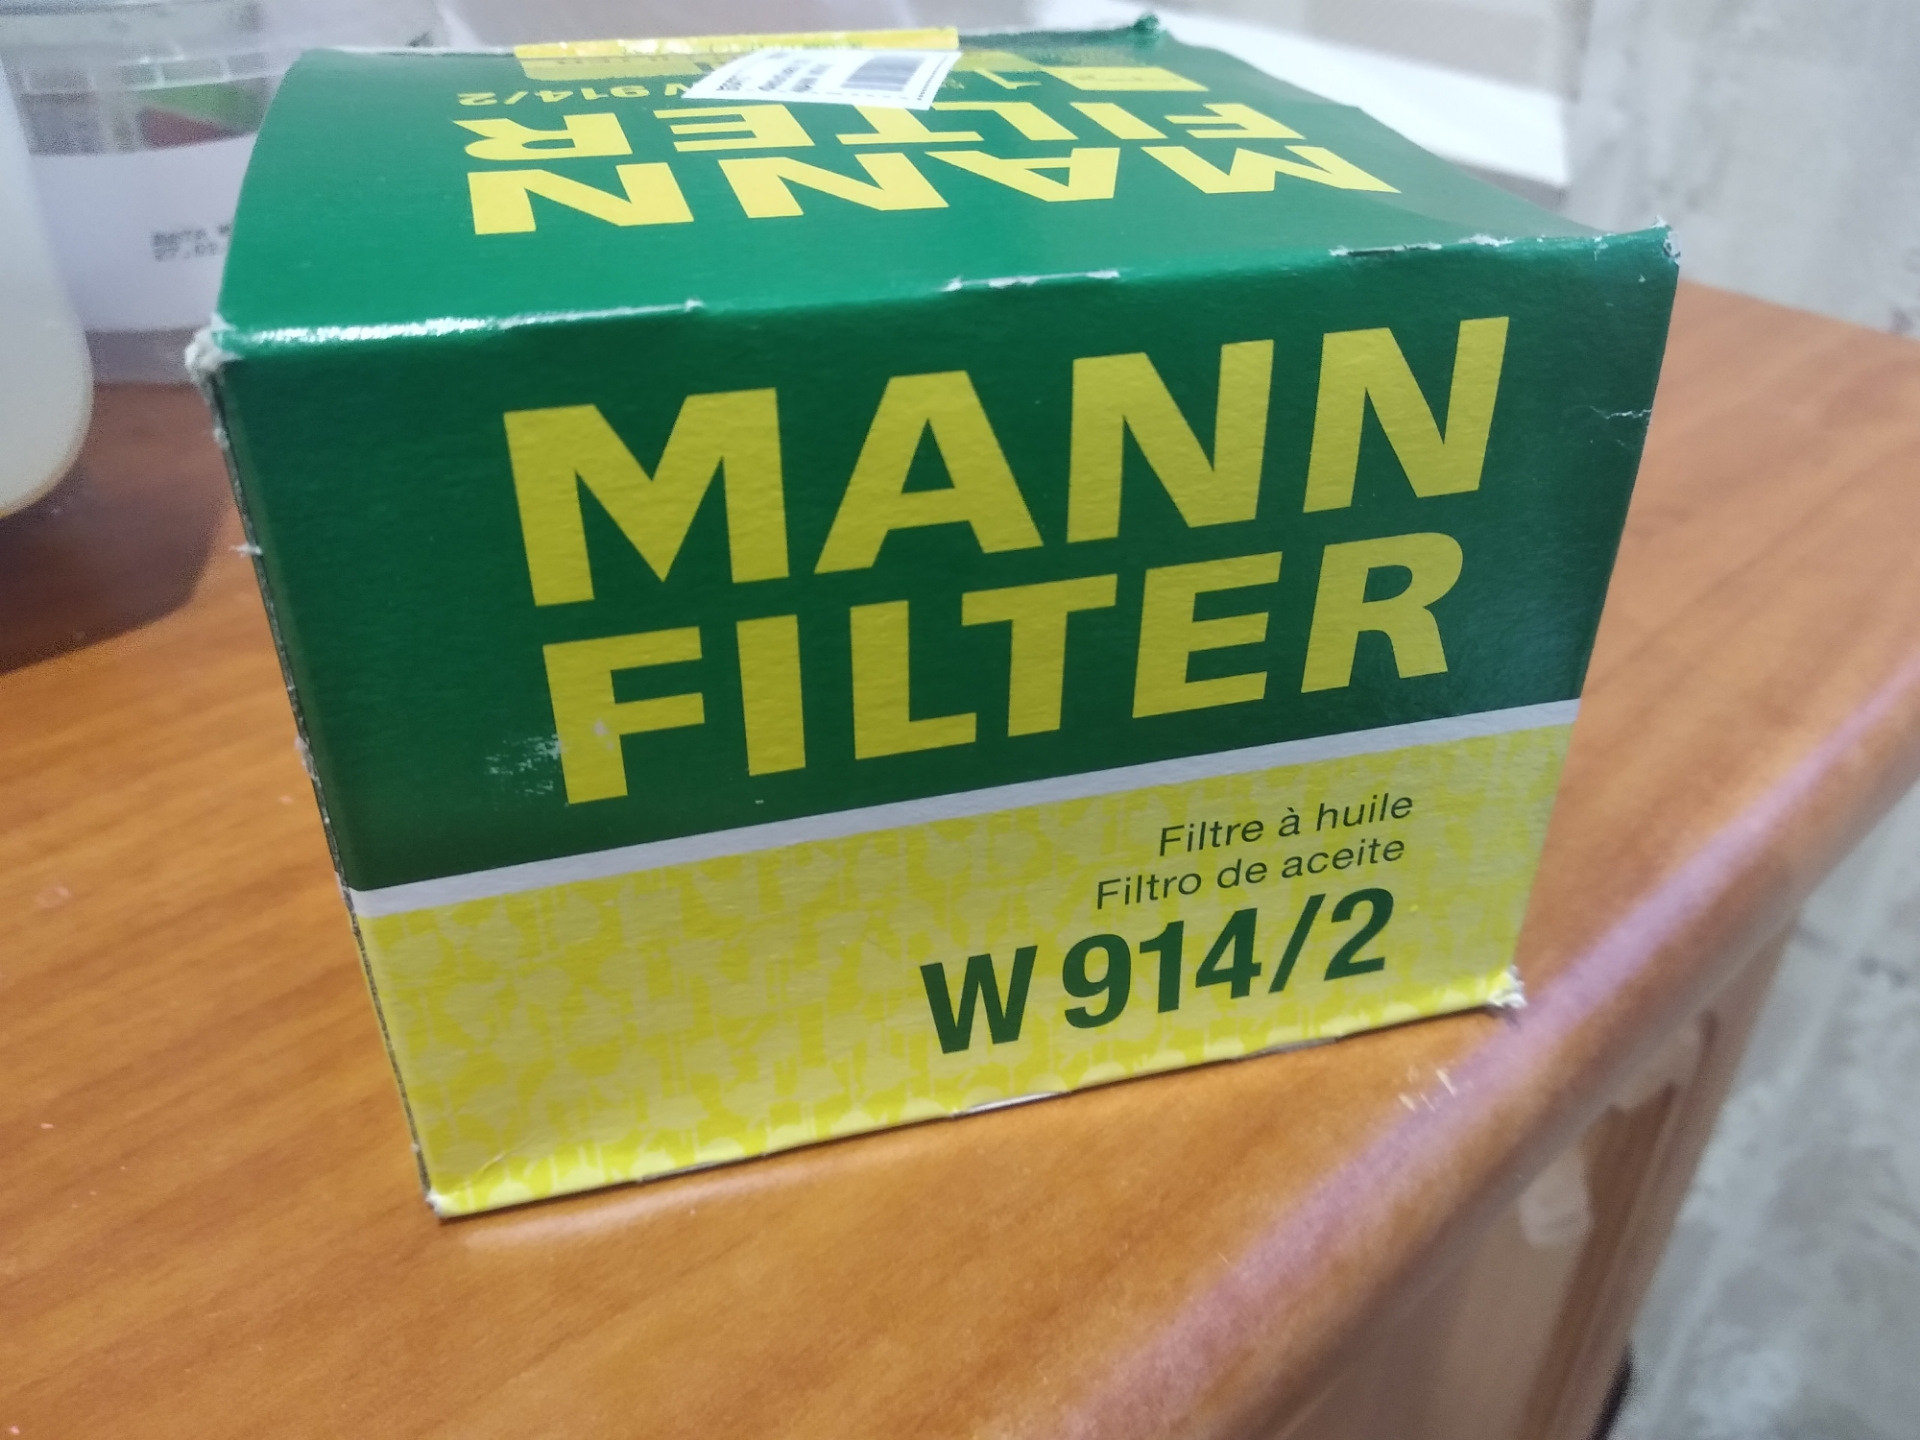 Как проверить оригинальность фильтра. Фильтр Mann w914/2. Фильтр Манн 914/2. Фильтр масляный Mann-Filter w914/2.